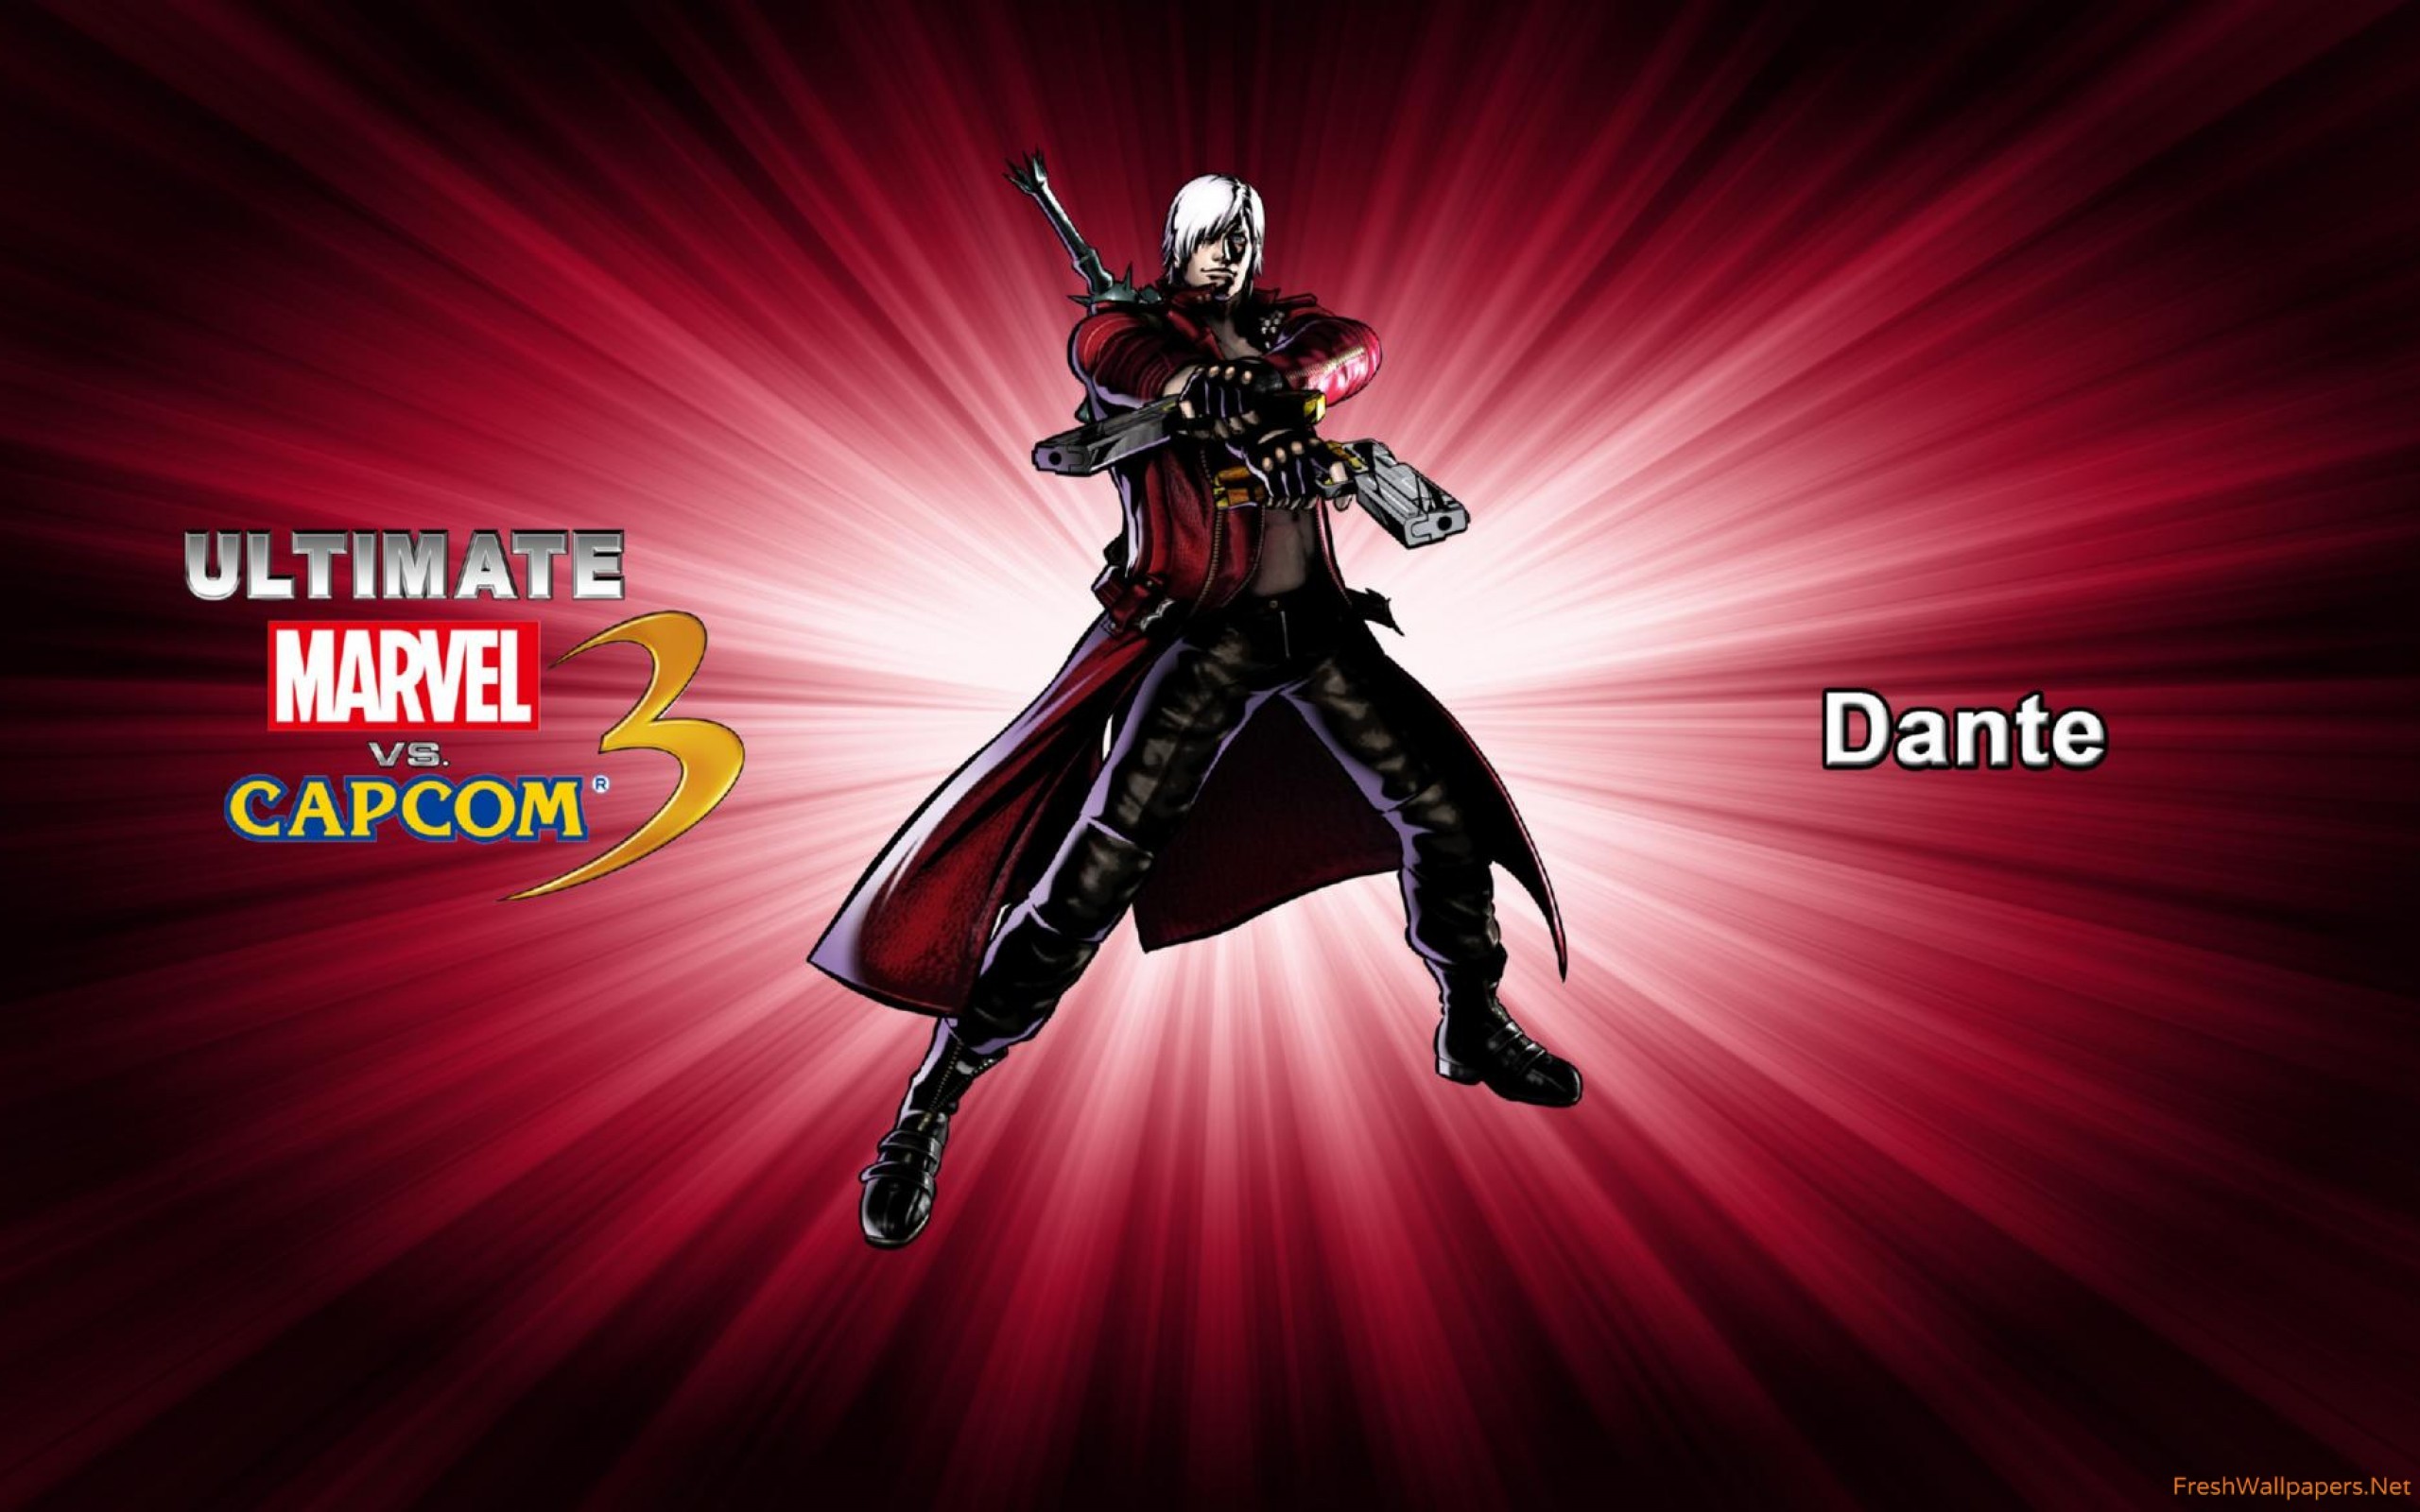 2560x1600 Dante - Ultimate Marvel vs. Capcom 3 wallpaper